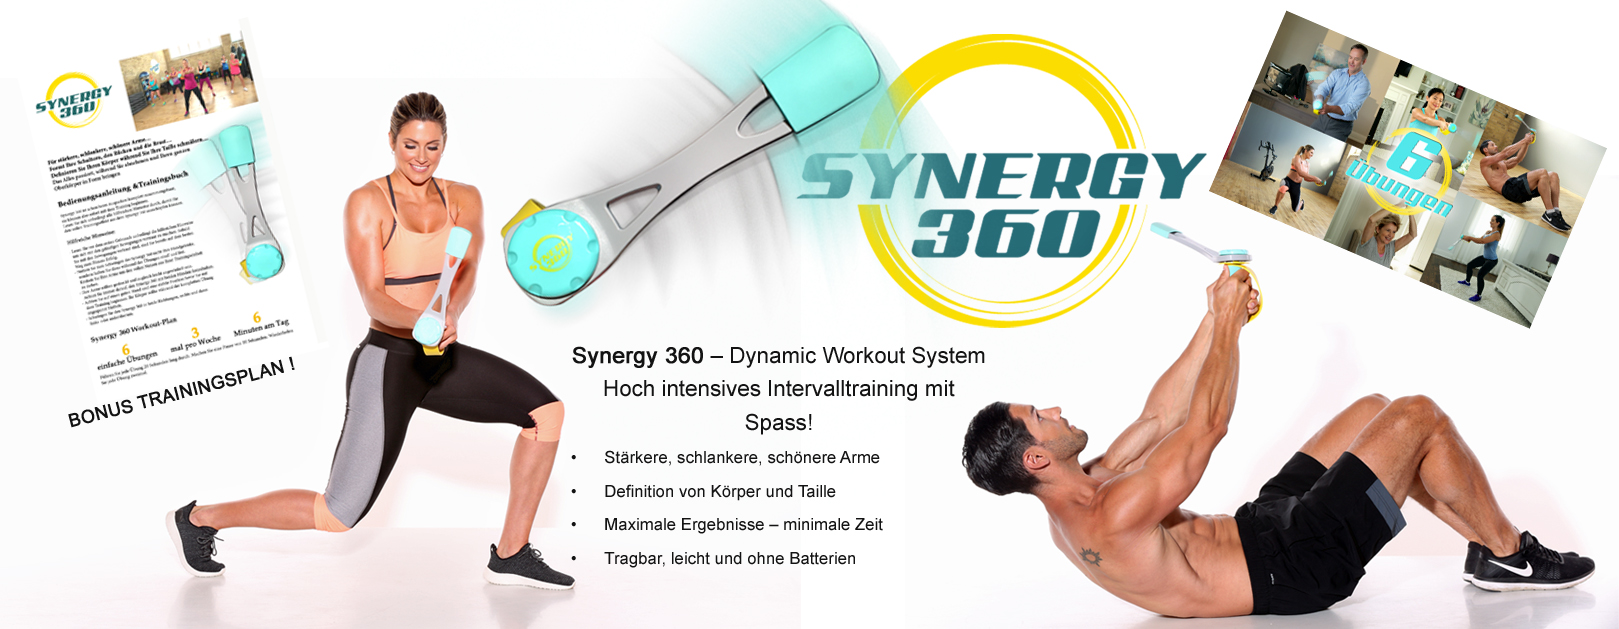 Synergy-360-Slider-2-0